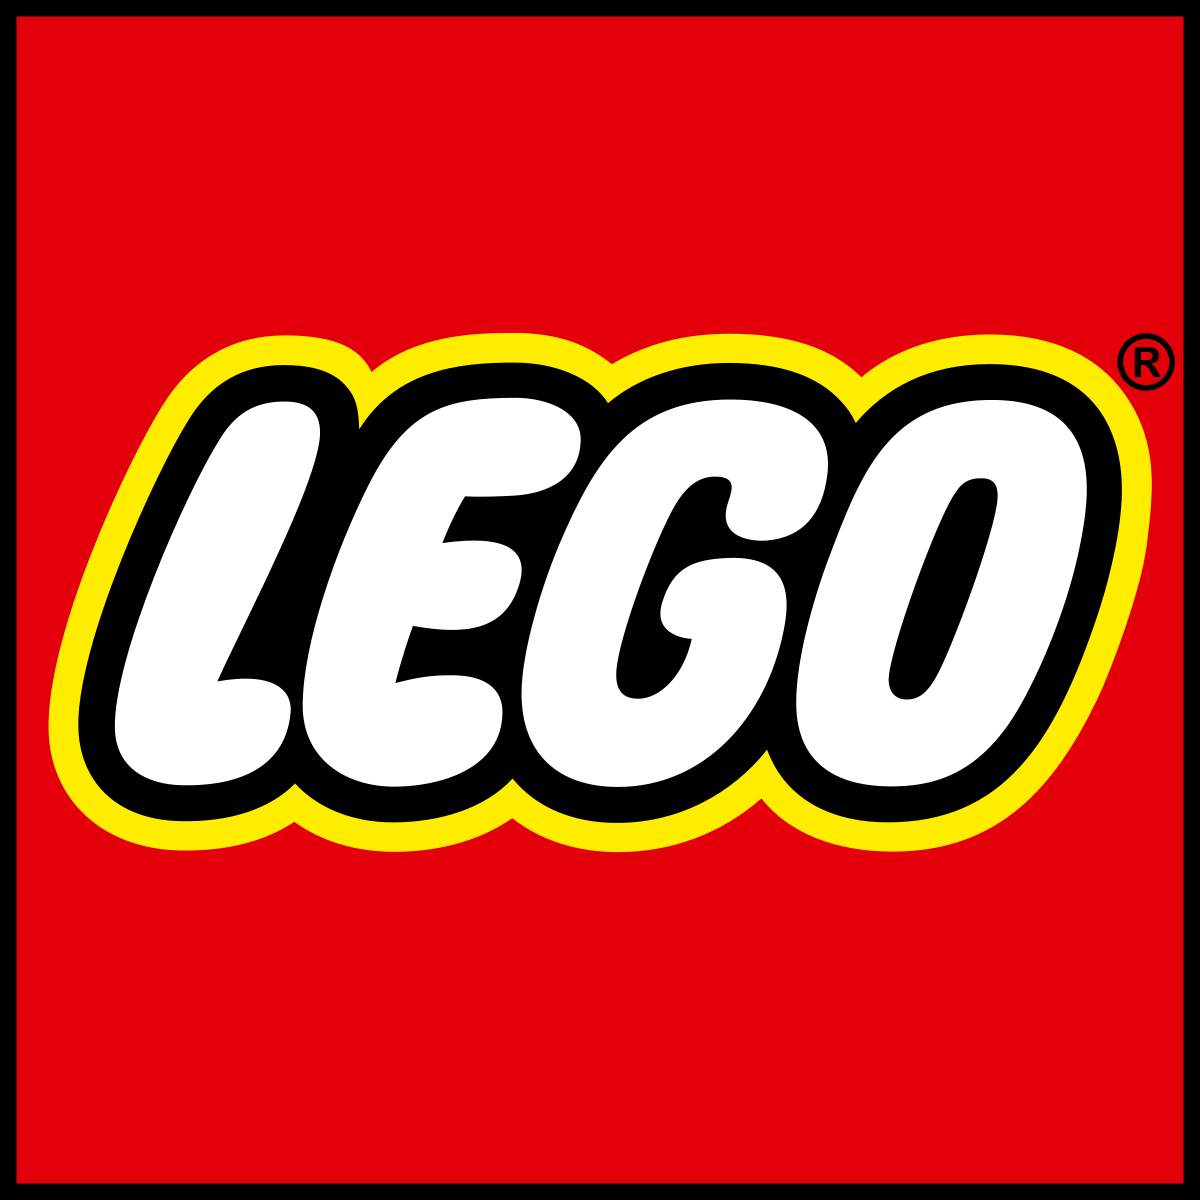 lego's marketing strategy